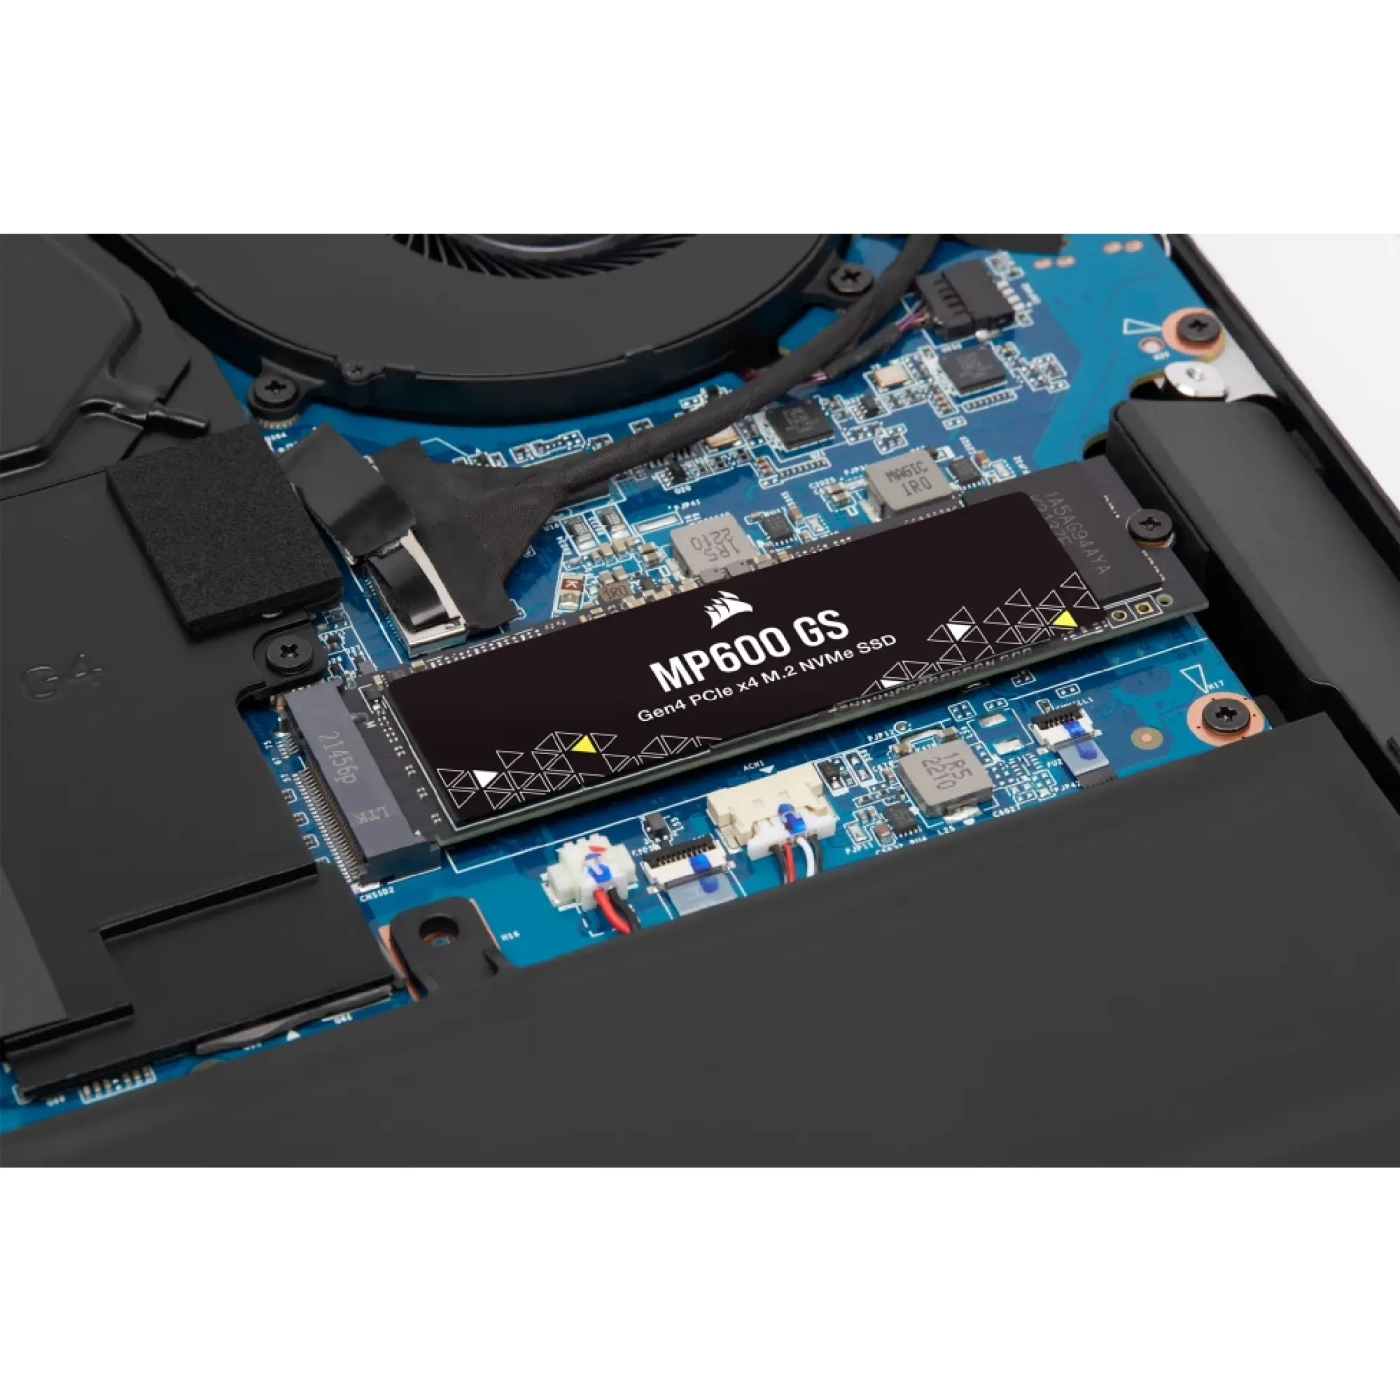 Купить SSD Corsair MP600 GS 500GB M.2 - фото 8